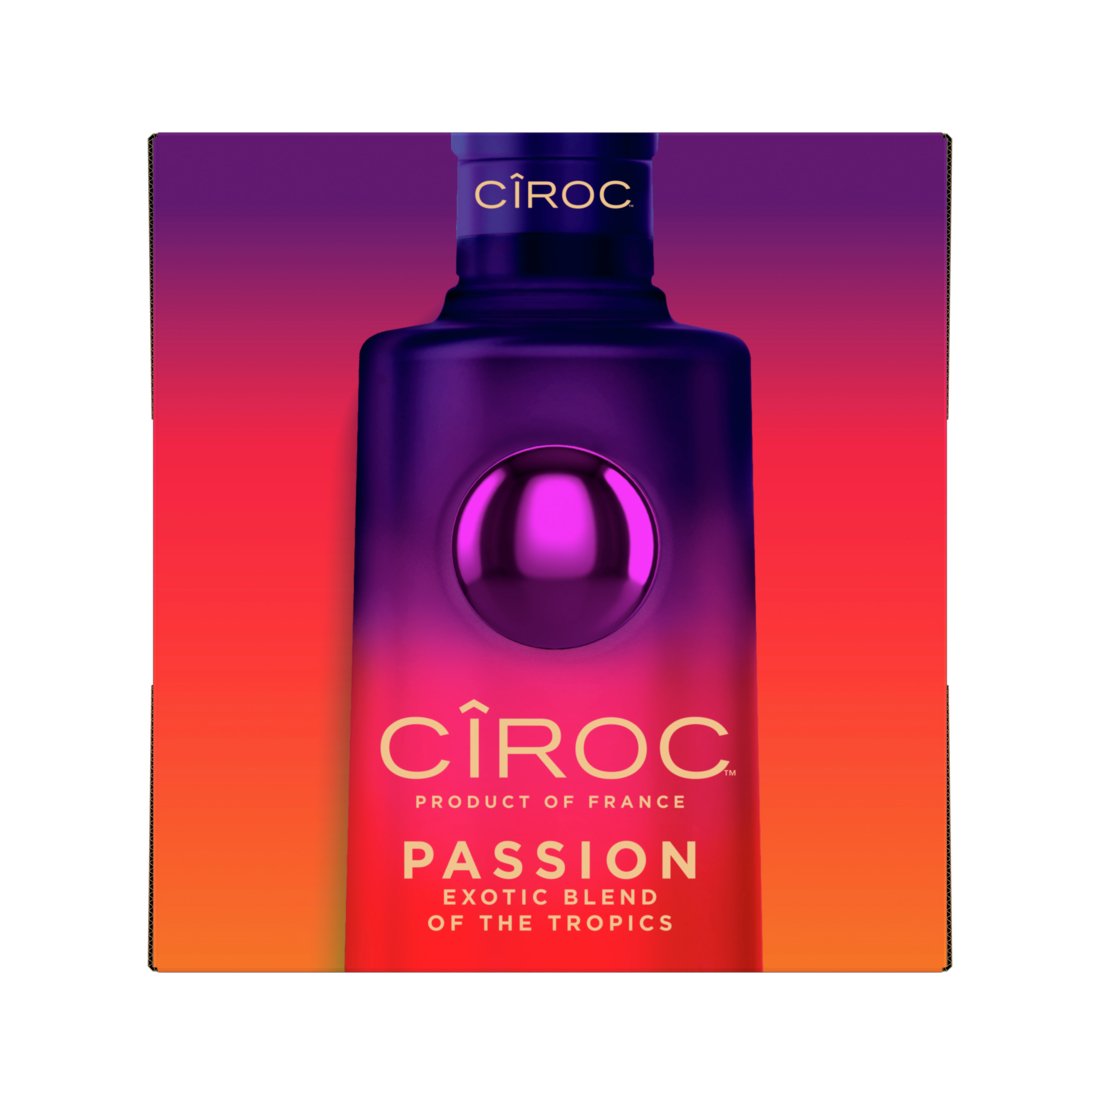 Ciroc Passion Limited Edition Vodka CÎROC   